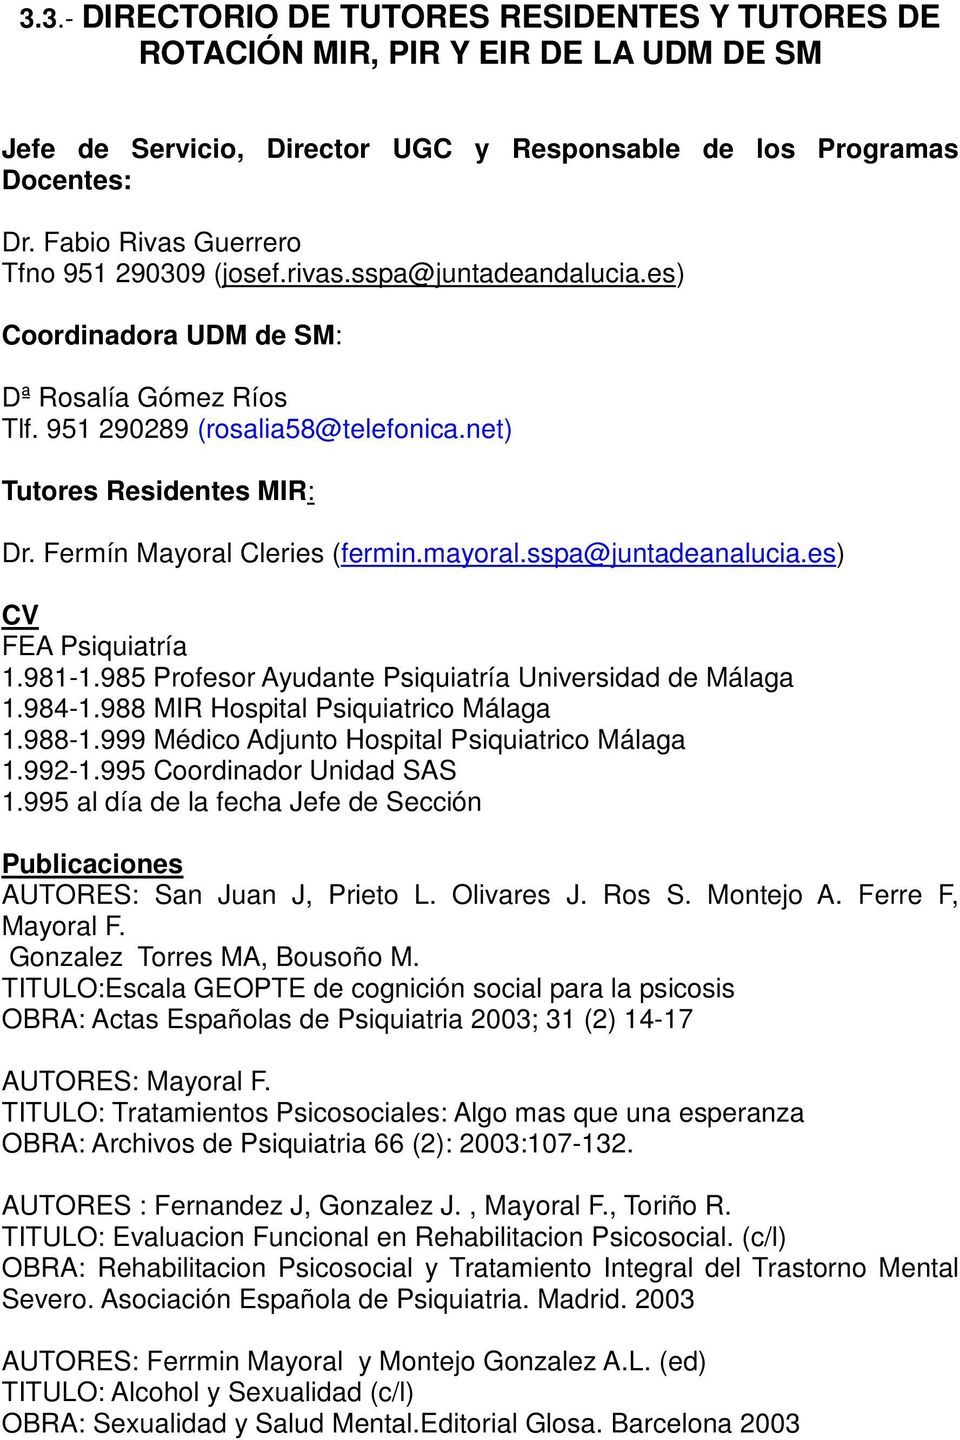 Fermín Mayoral Cleries (fermin.mayoral.sspa@juntadeanalucia.es) CV FEA Psiquiatría 1.981-1.985 Profesor Ayudante Psiquiatría Universidad de Málaga 1.984-1.988 MIR Hospital Psiquiatrico Málaga 1.988-1.